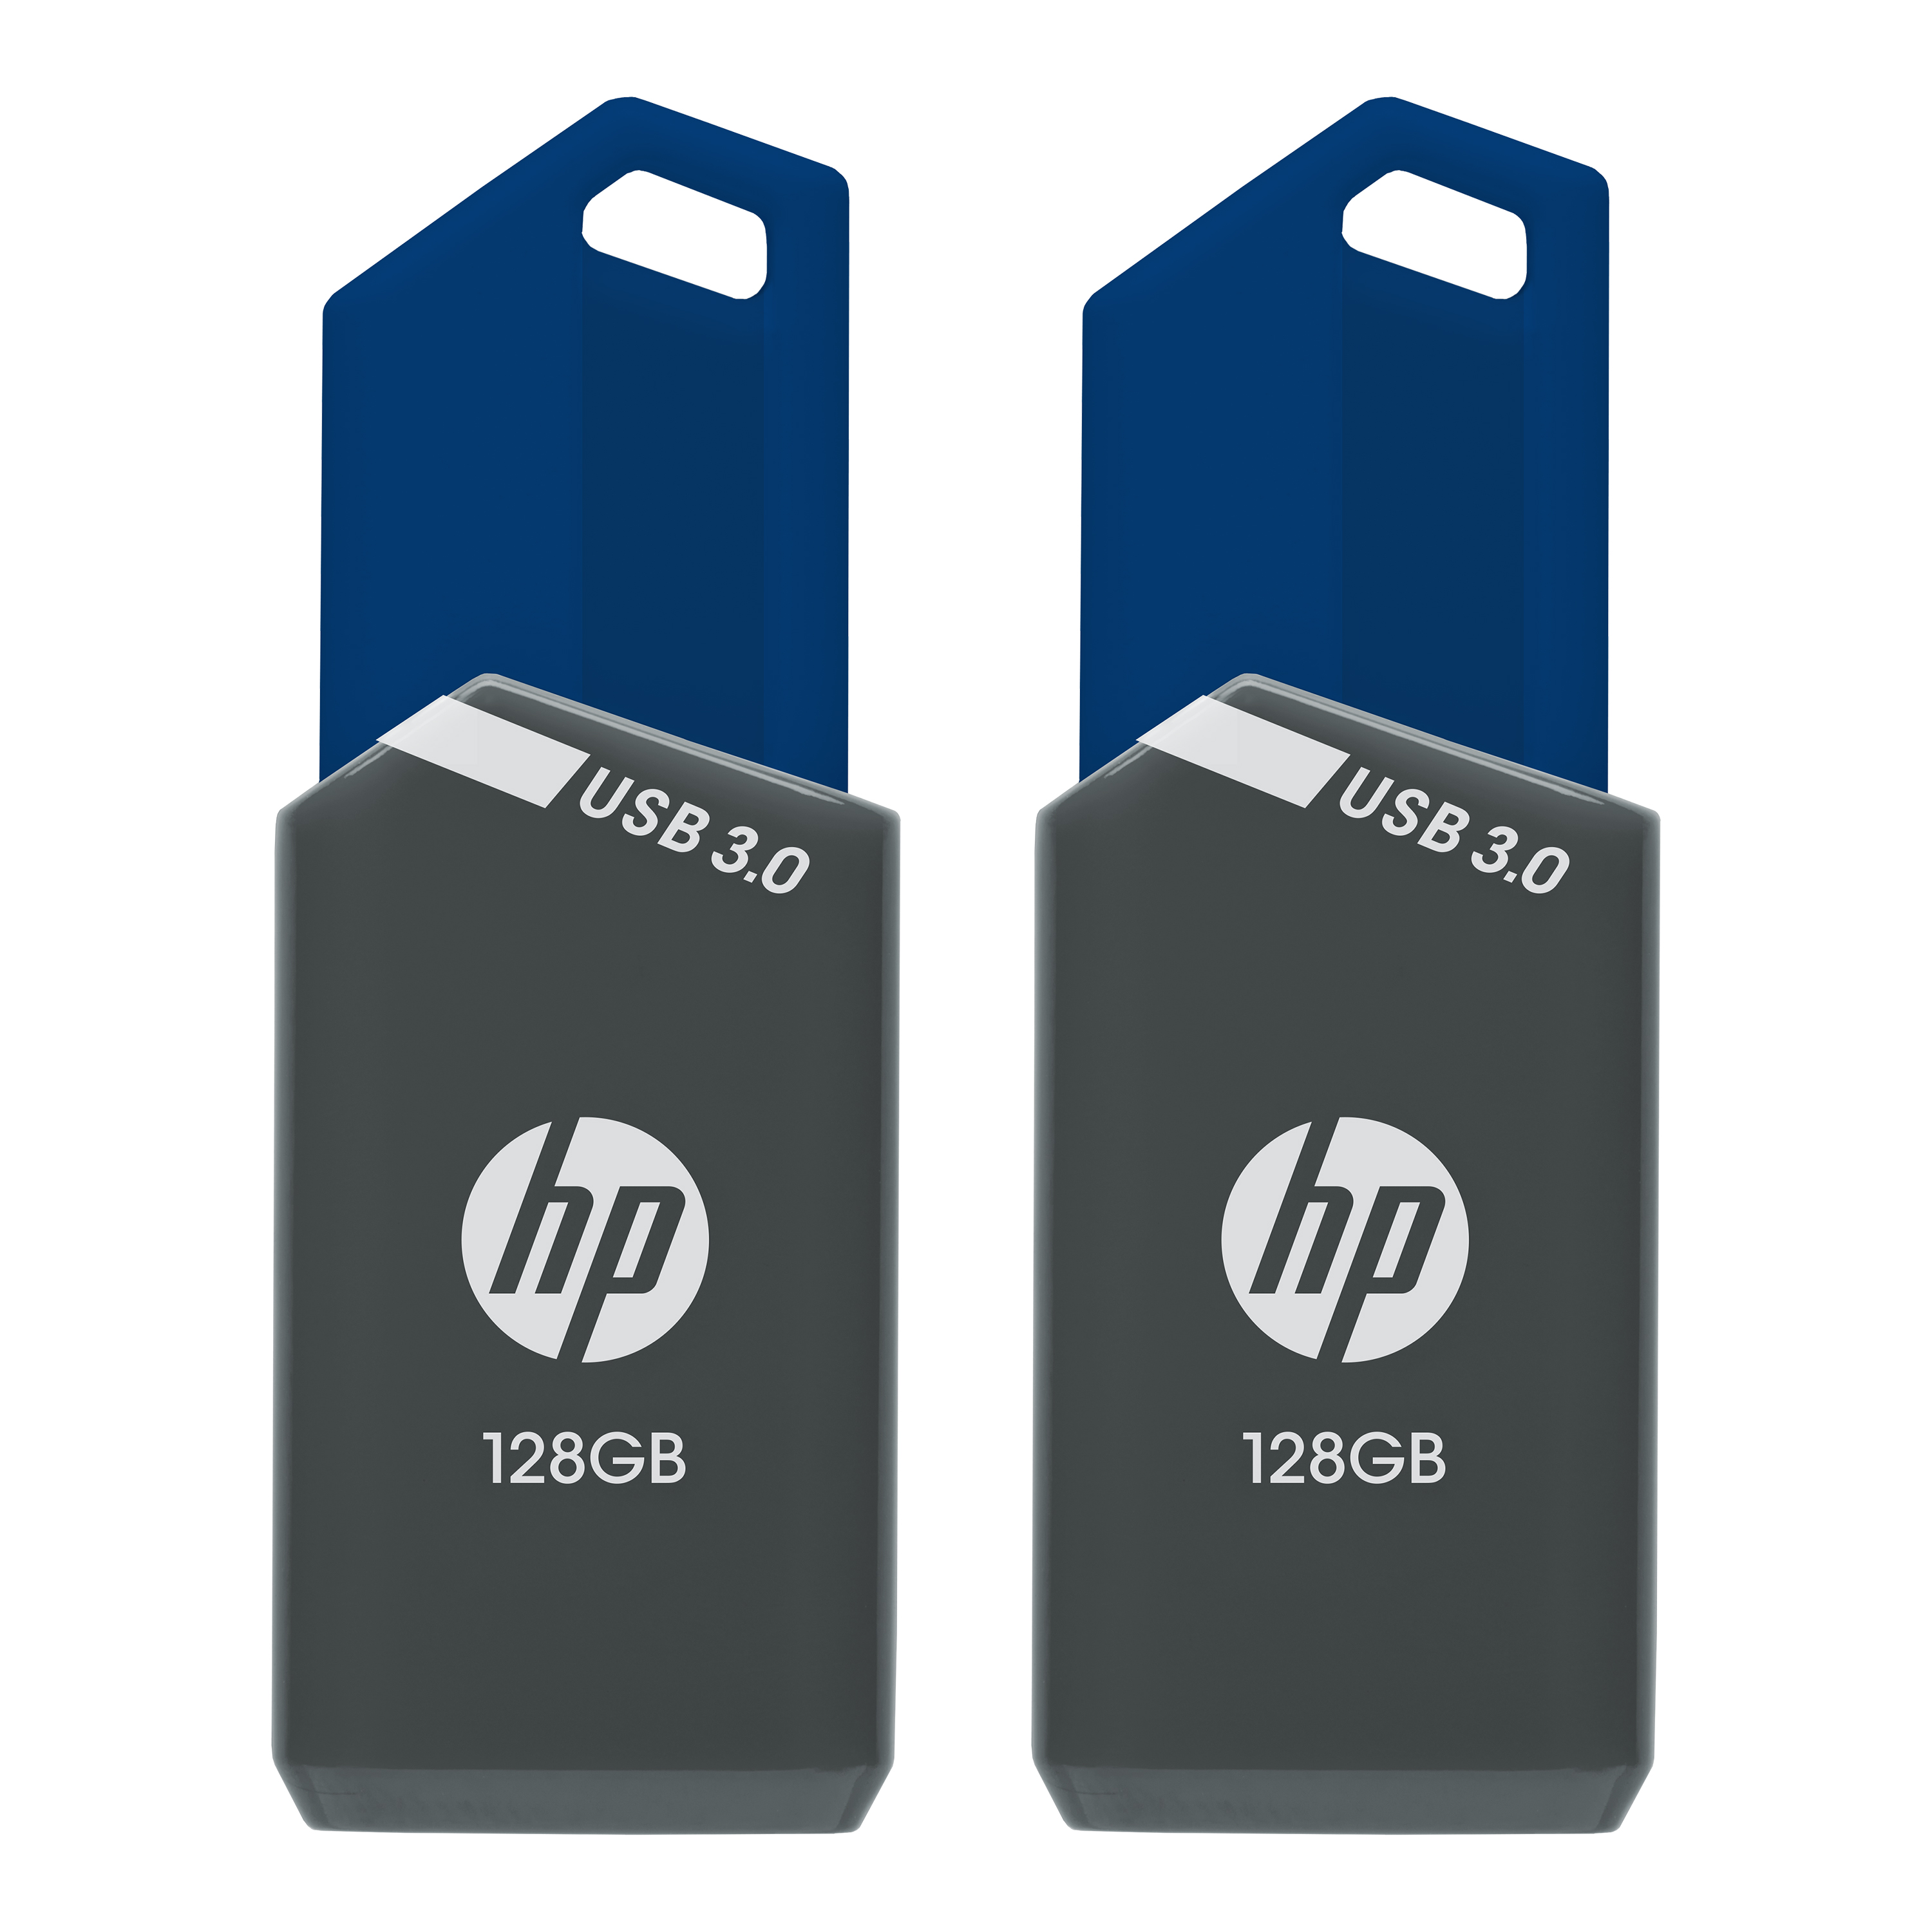 HP 128GB x900w USB 3.0 Flash Drive 2-Pack - image 1 of 5